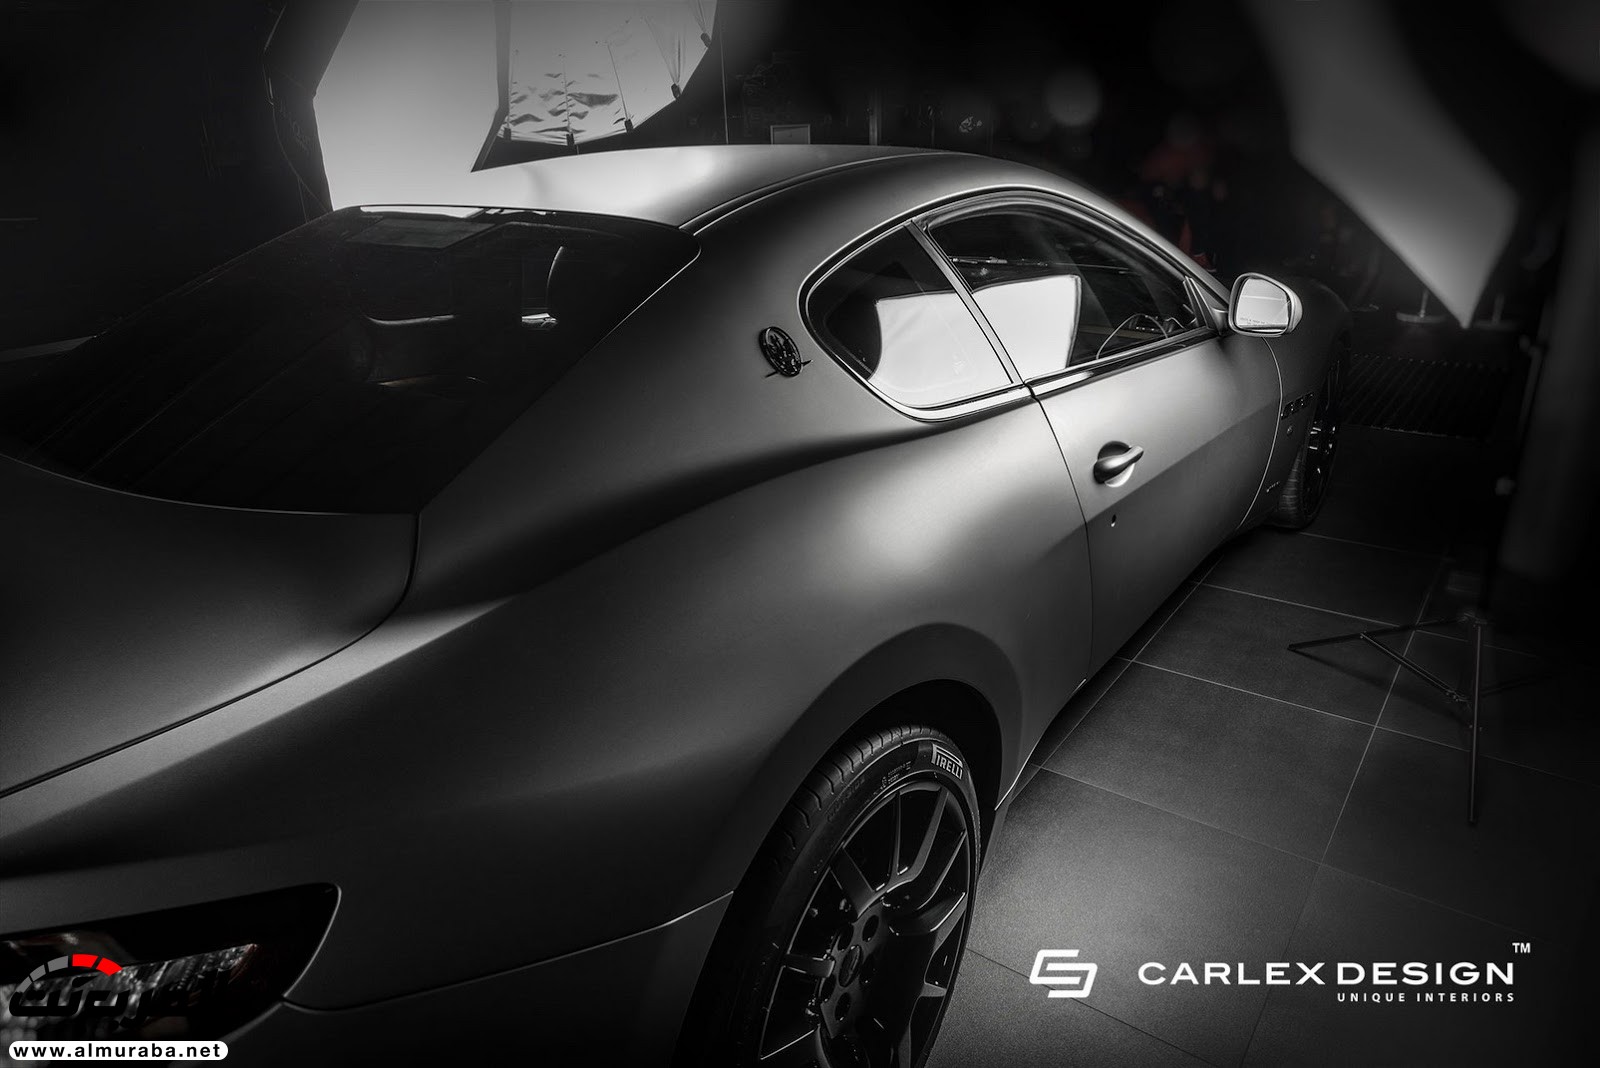 كارلكس تكشف عن داخل "مازيراتي" غران توريزمو التخصيصية Maserati 35